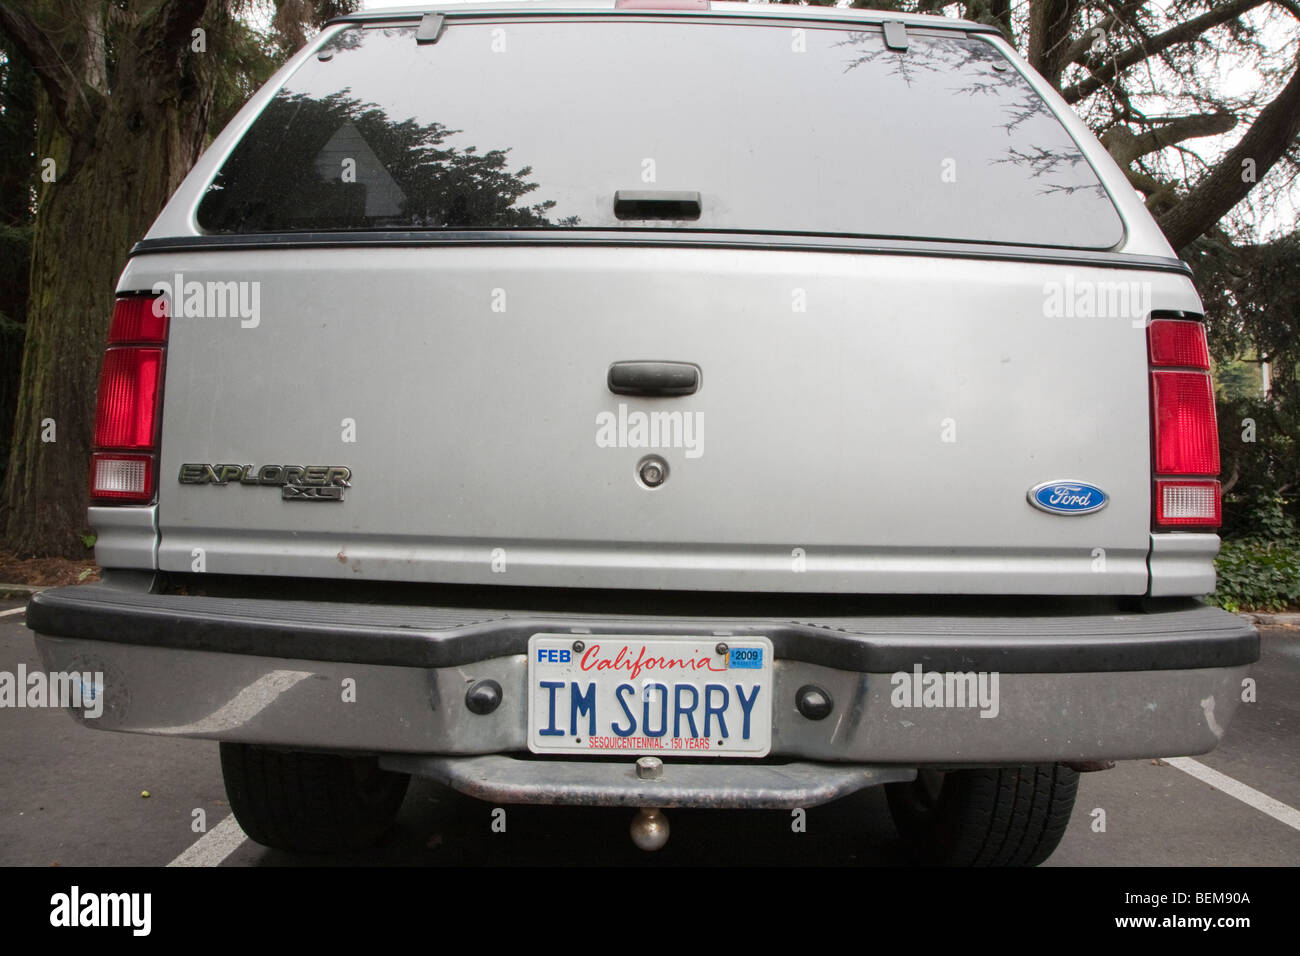 Eine Rückansicht eines Ford Explorer SUV Autos mit einem Kennzeichen "I 'm Sorry". San Francisco, Kalifornien, USA Stockfoto